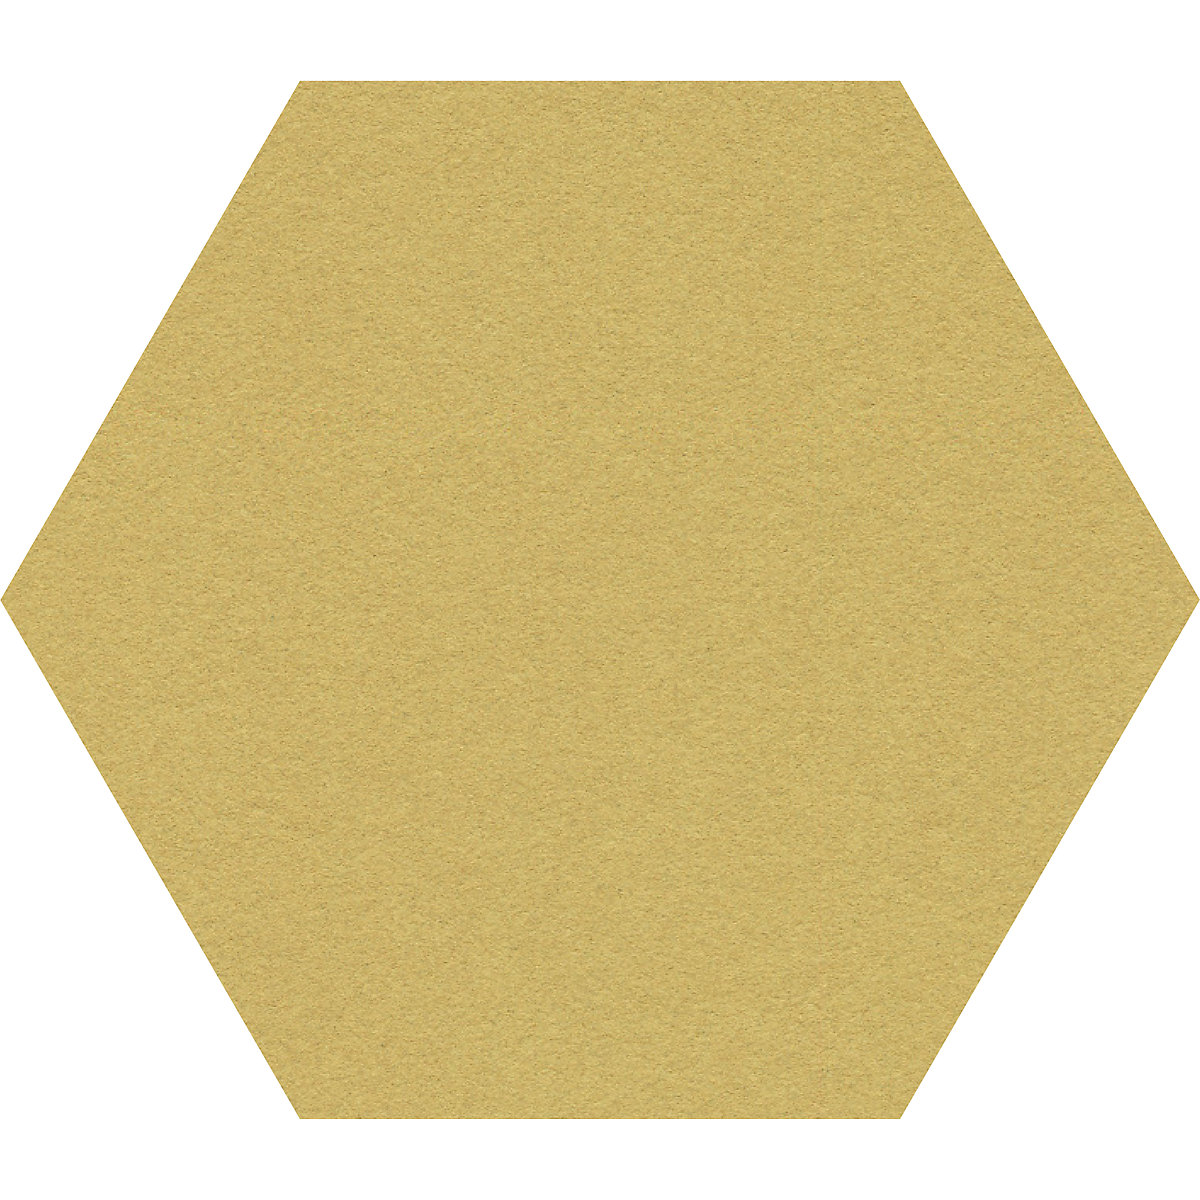 Quadro de pinos com design hexagonal – Chameleon, cortiça, LxA 600 x 600 mm, amarelo-34